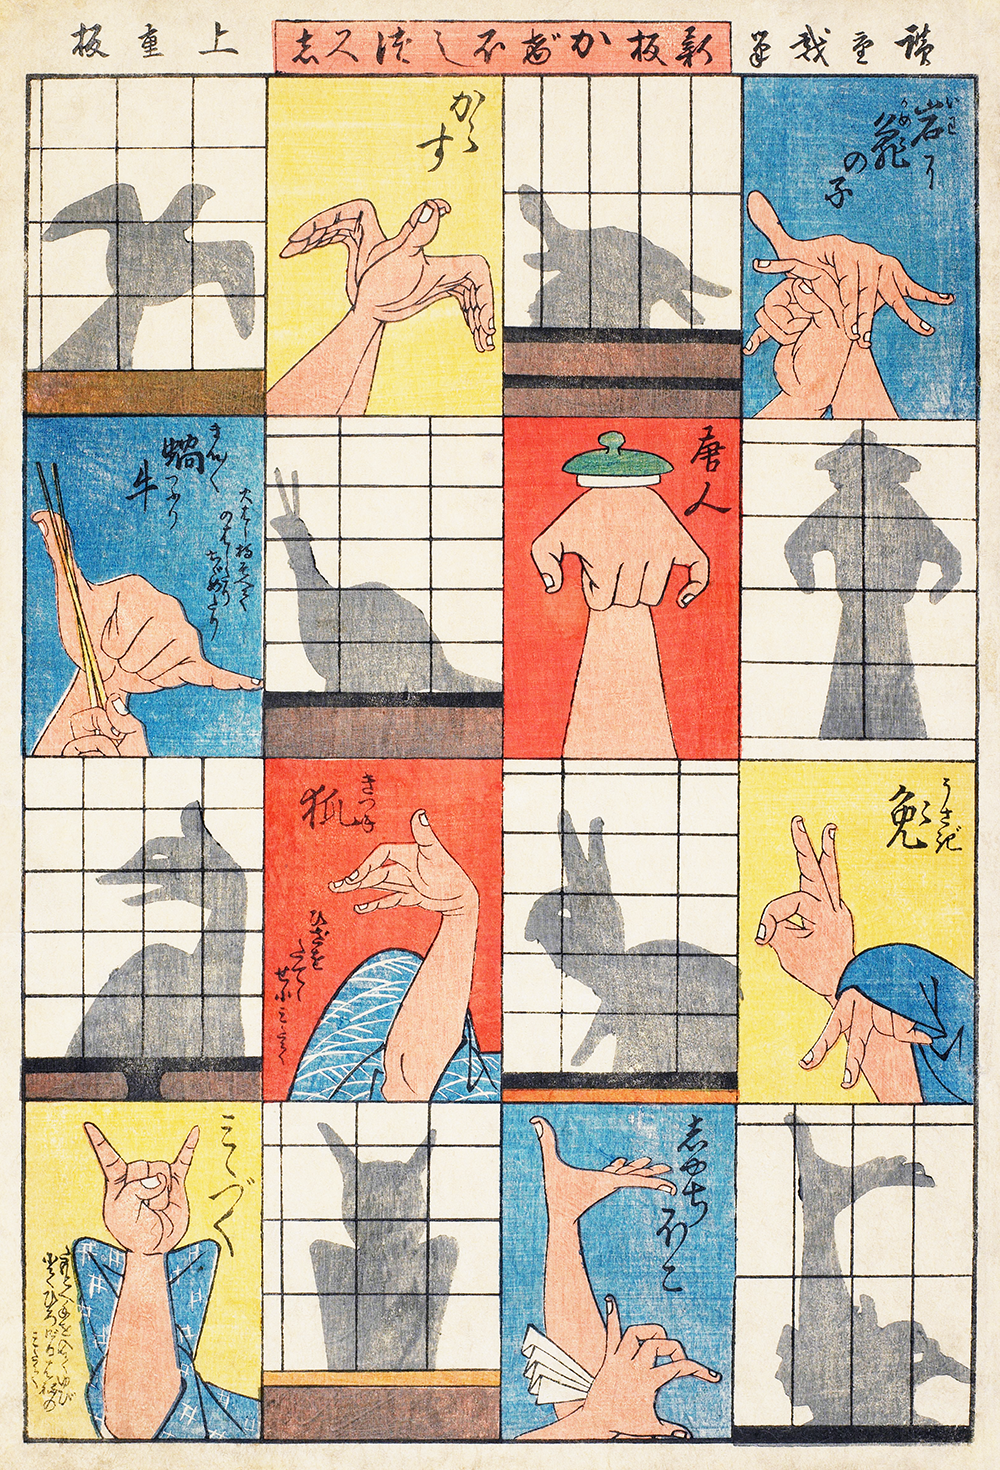 Utagawa Hiroshige's Eight